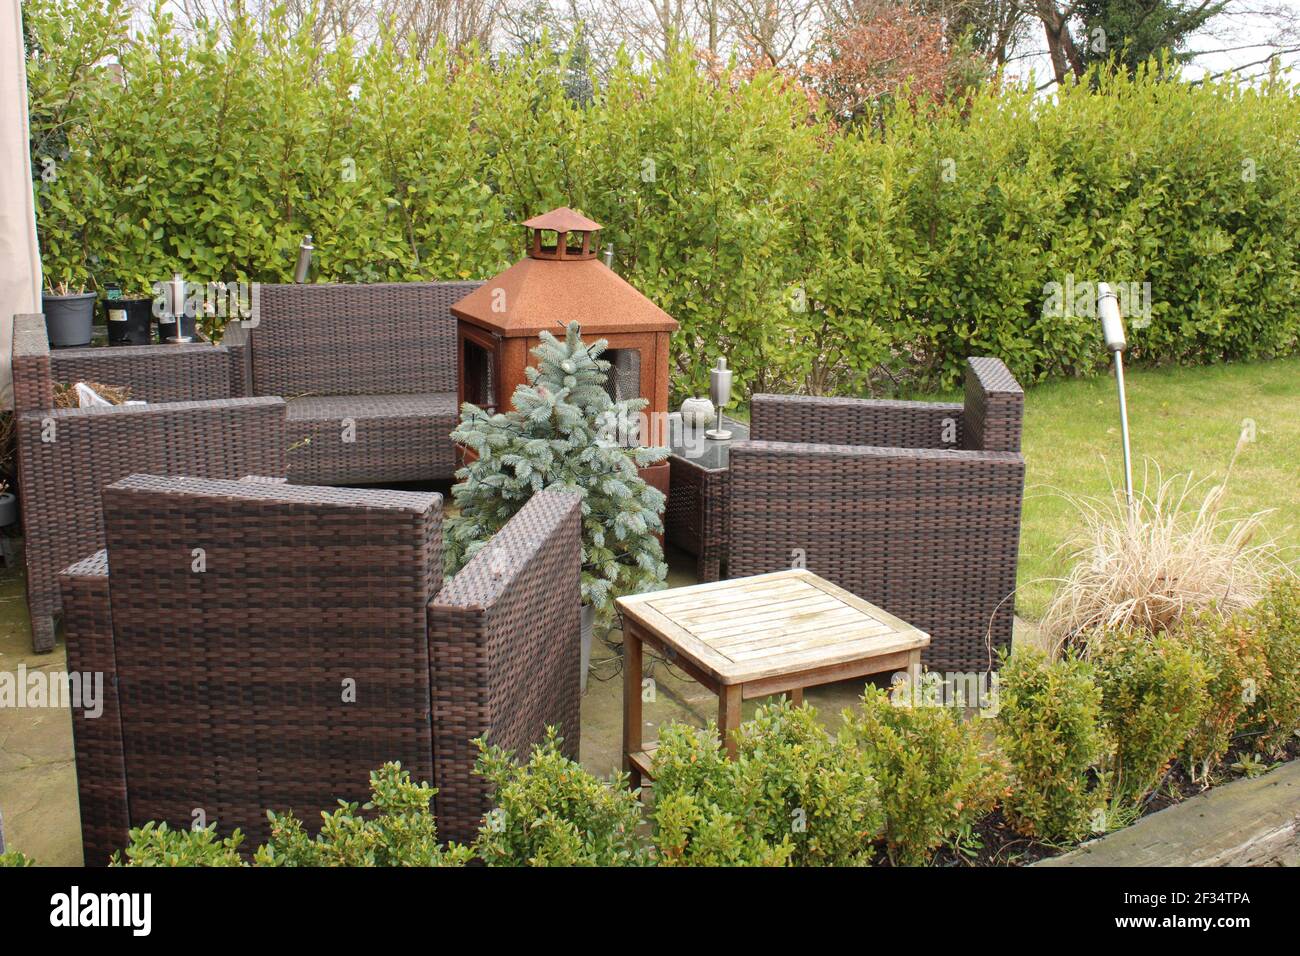 Jardin avec meubles en rotin brun. Concept de vie extérieure Banque D'Images